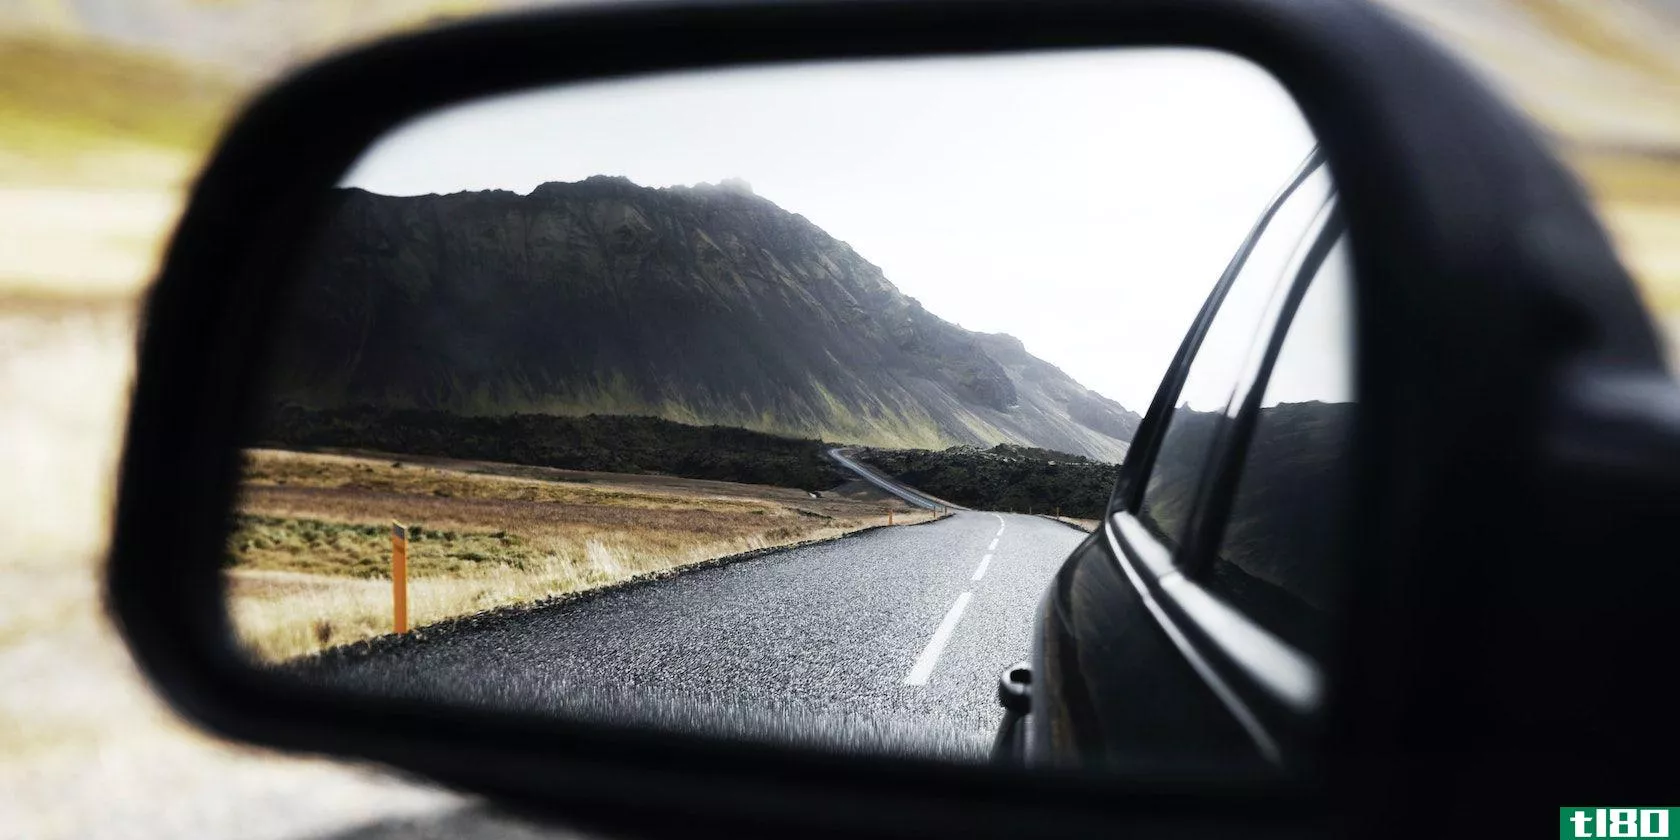 A rear view mirror in a car